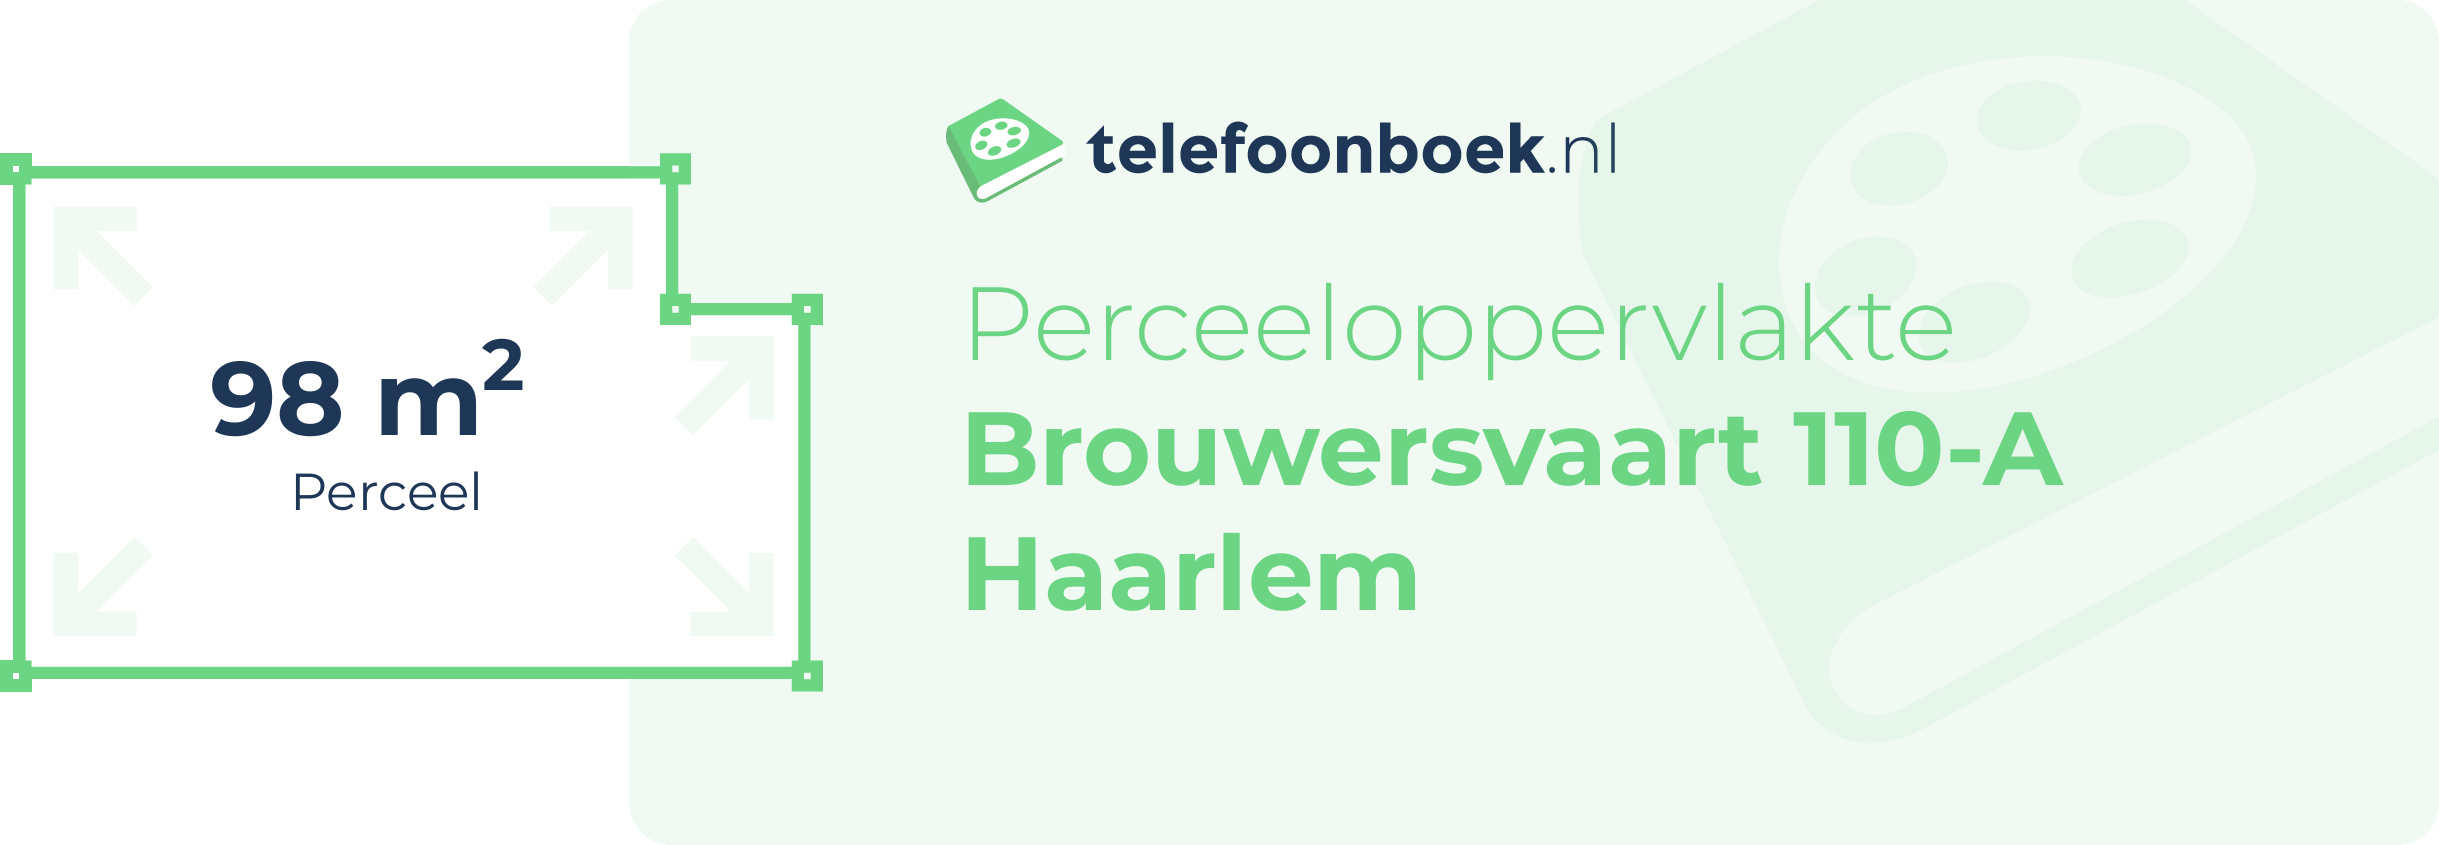 Perceeloppervlakte Brouwersvaart 110-A Haarlem